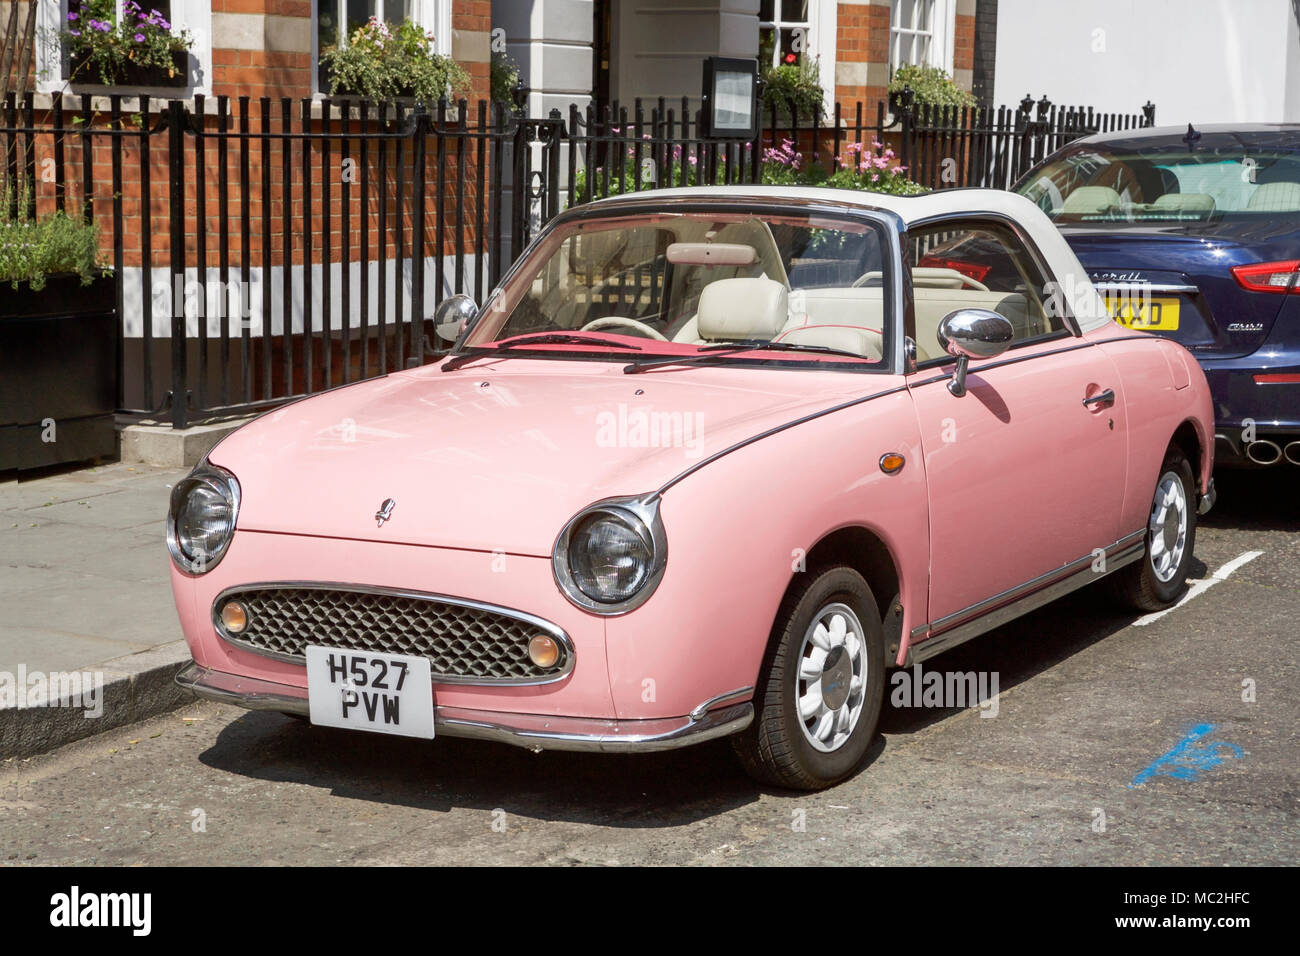 Pink nissan figaro car -Fotos und -Bildmaterial in hoher Auflösung – Alamy